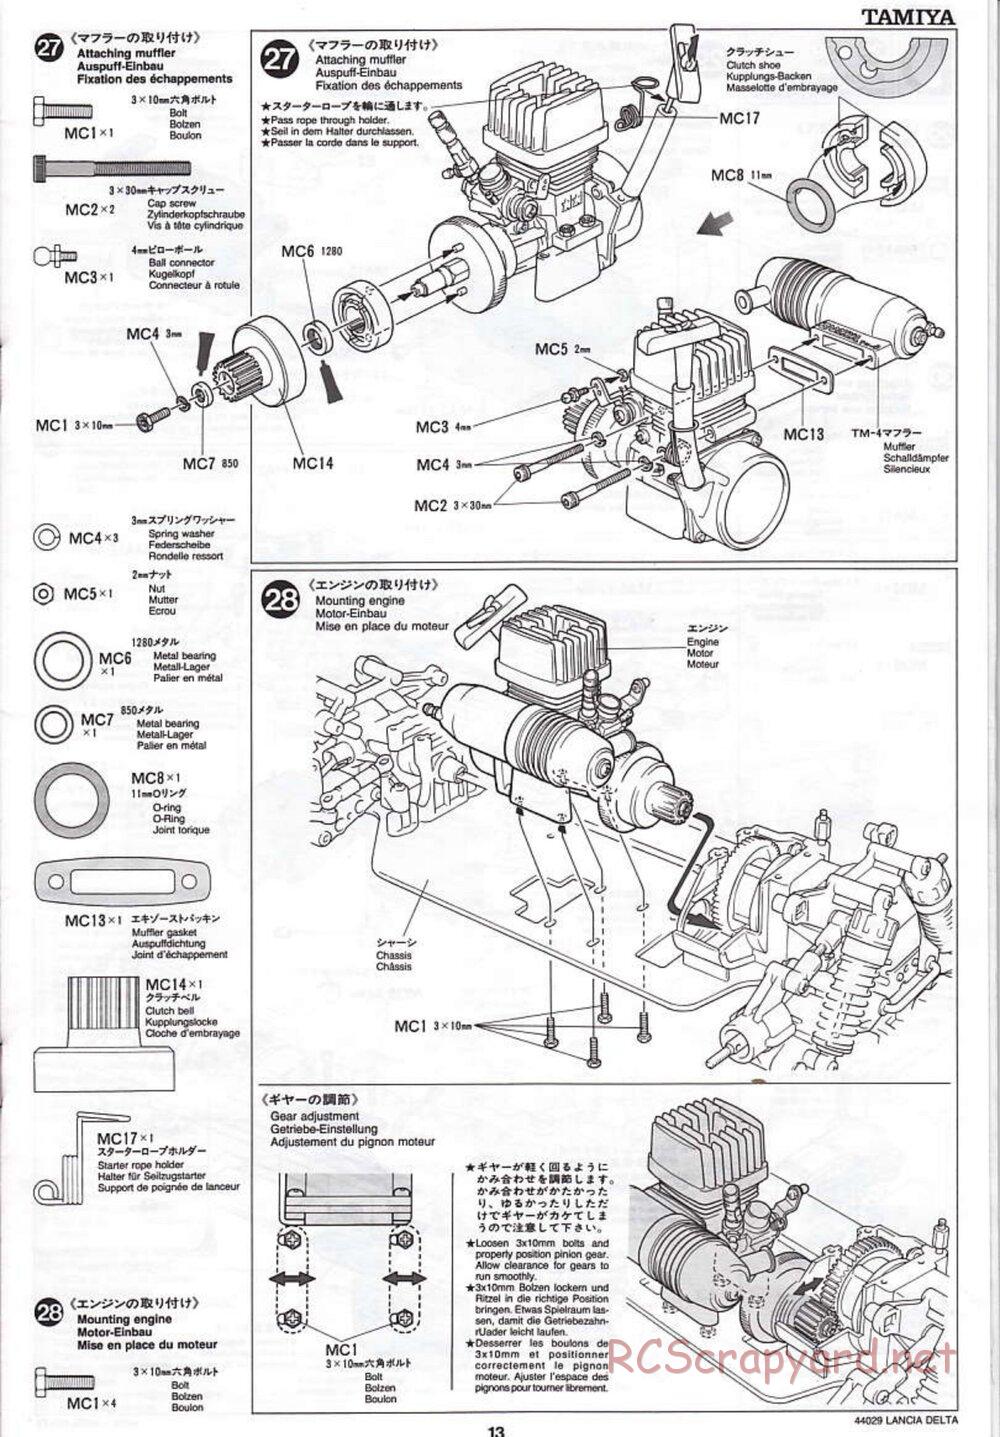 Tamiya - Lancia Delta HF Integrale - TG10 Mk.1 Chassis - Manual - Page 13